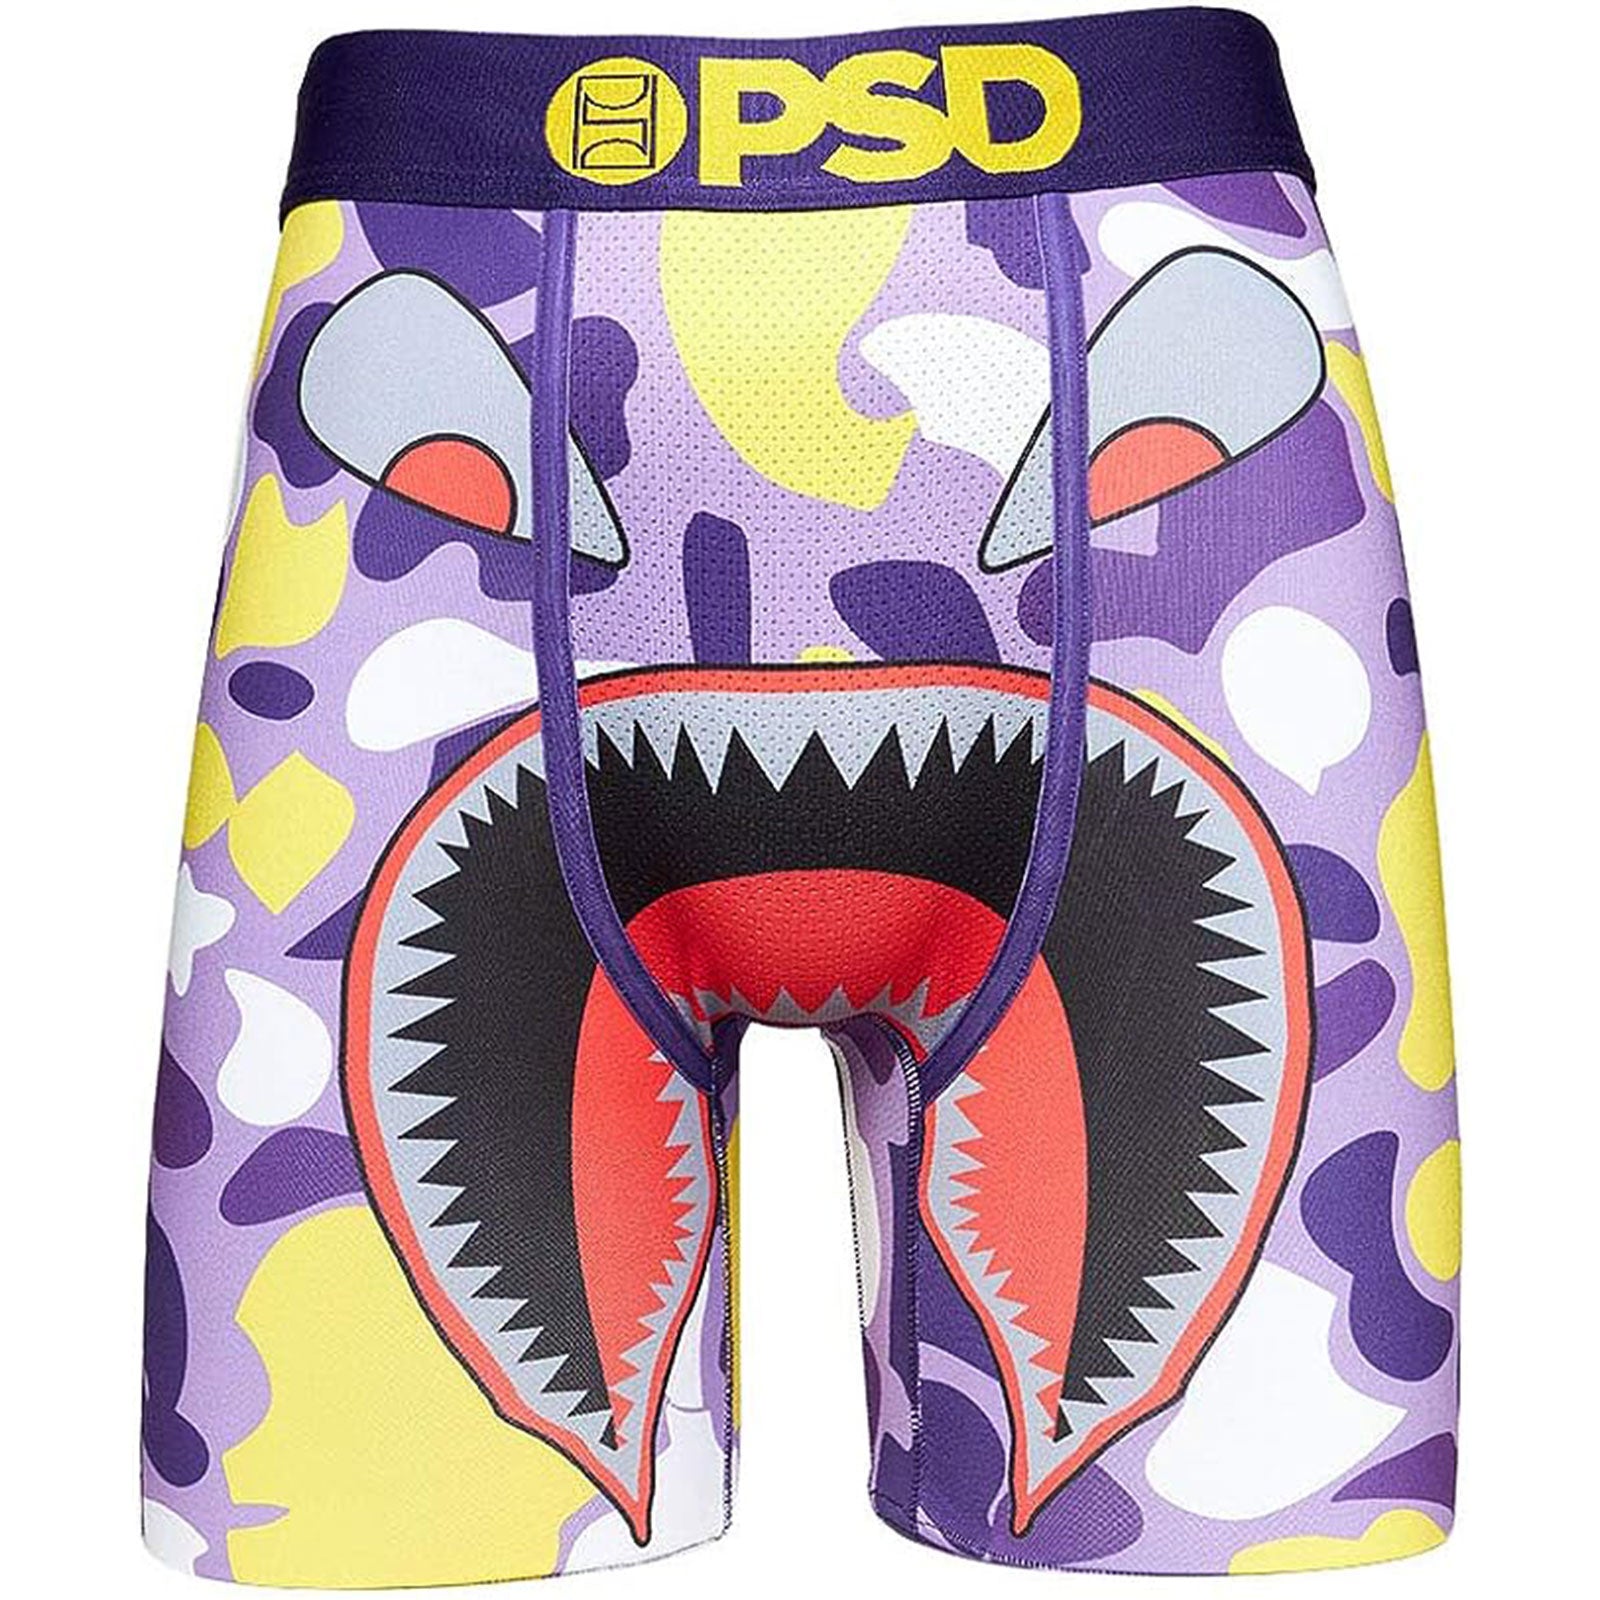 PSD Underwear Men's Psd Premium Boxer Brief (White Jimmy Butler